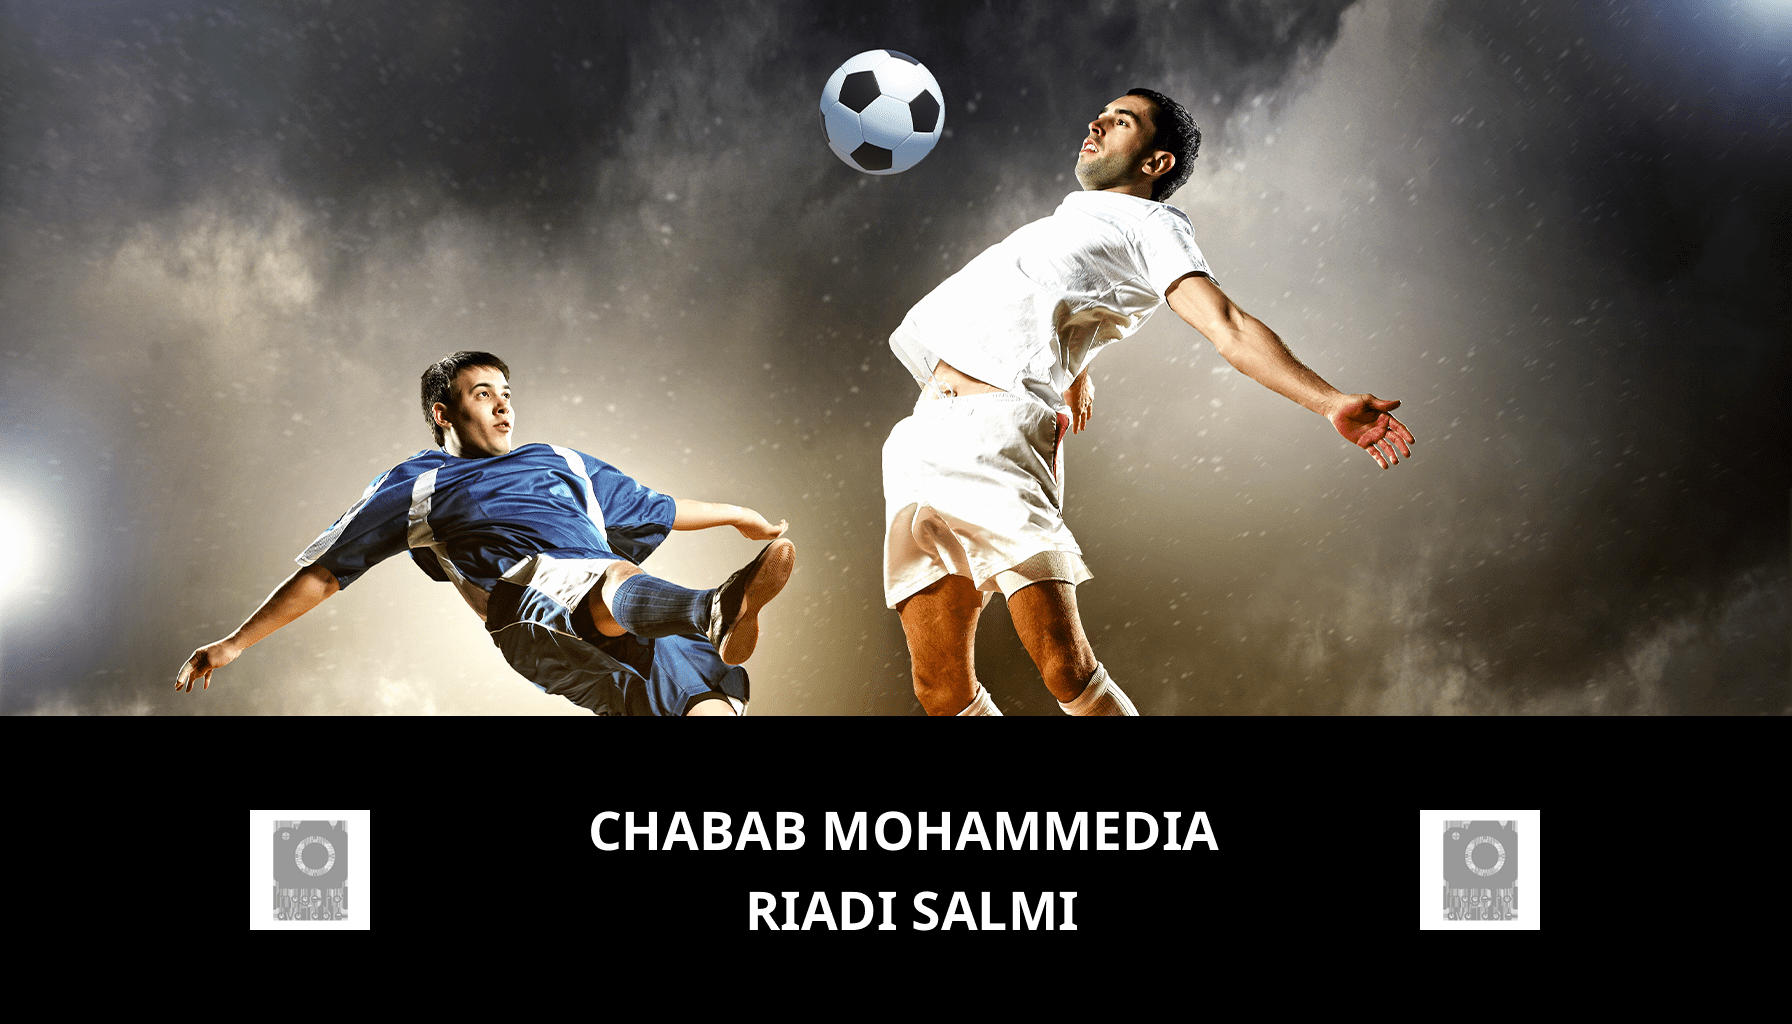 Previsione per Chabab Mohammedia VS Riadi Salmi il 08/03/2024 Analysis of the match